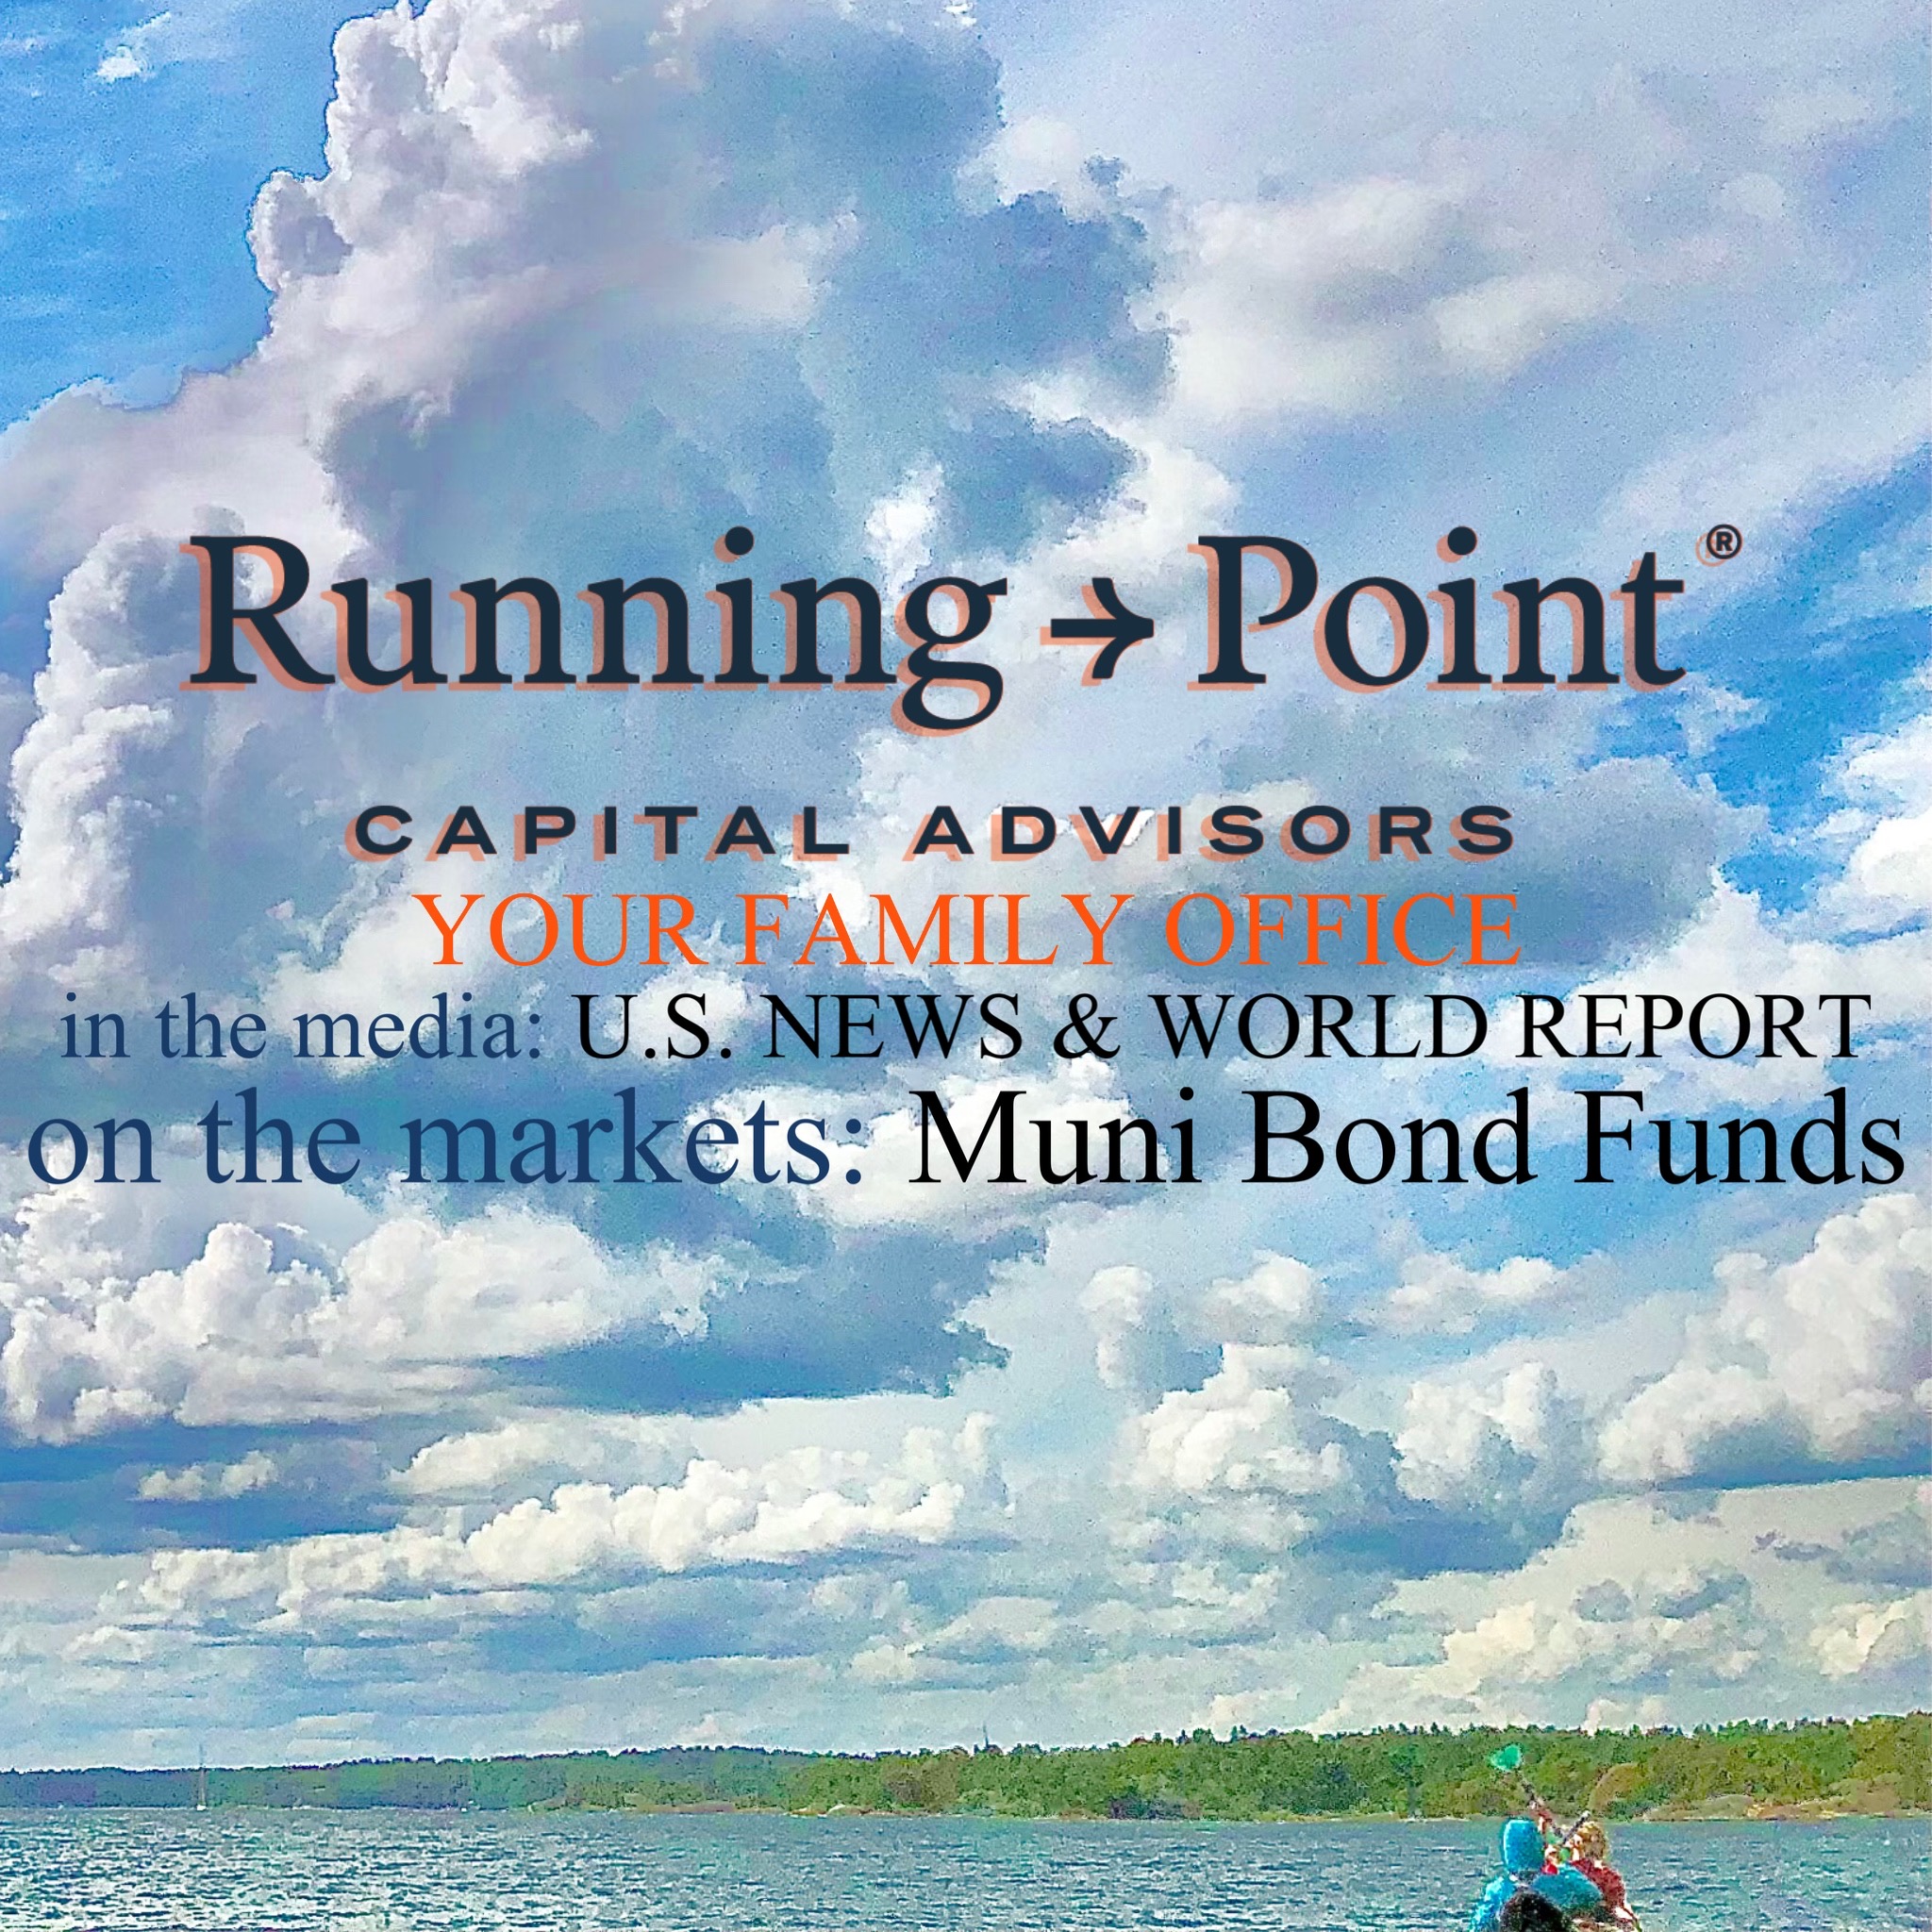 U.S. News & World Report: Best Municipal Bond Funds